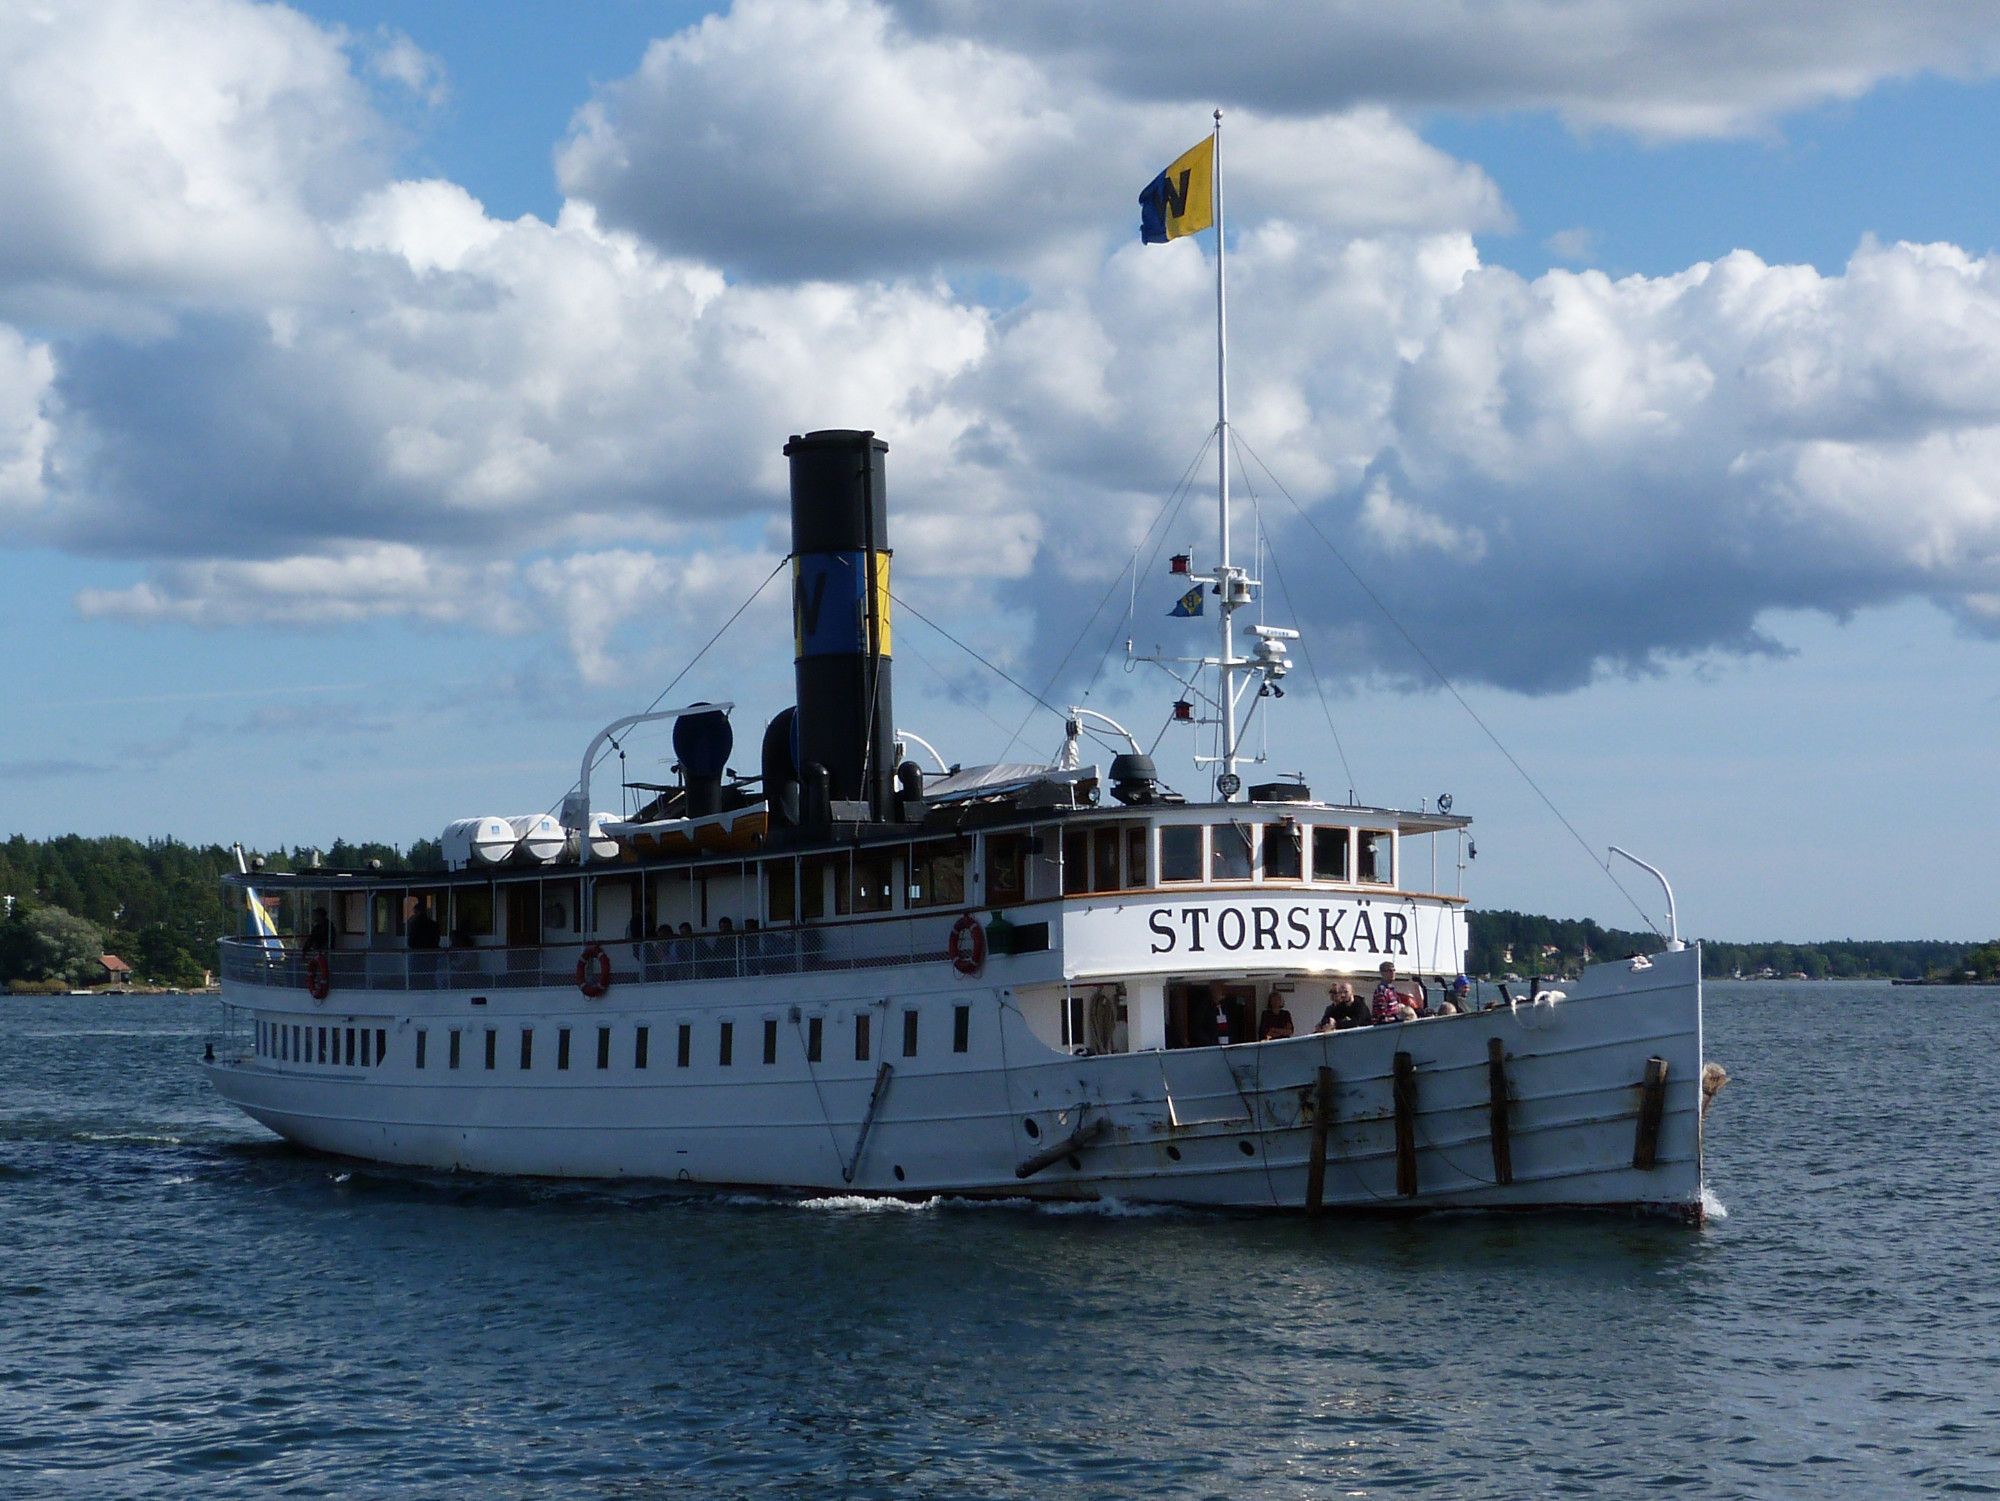 Storskär Steamship ferry between central archipelago